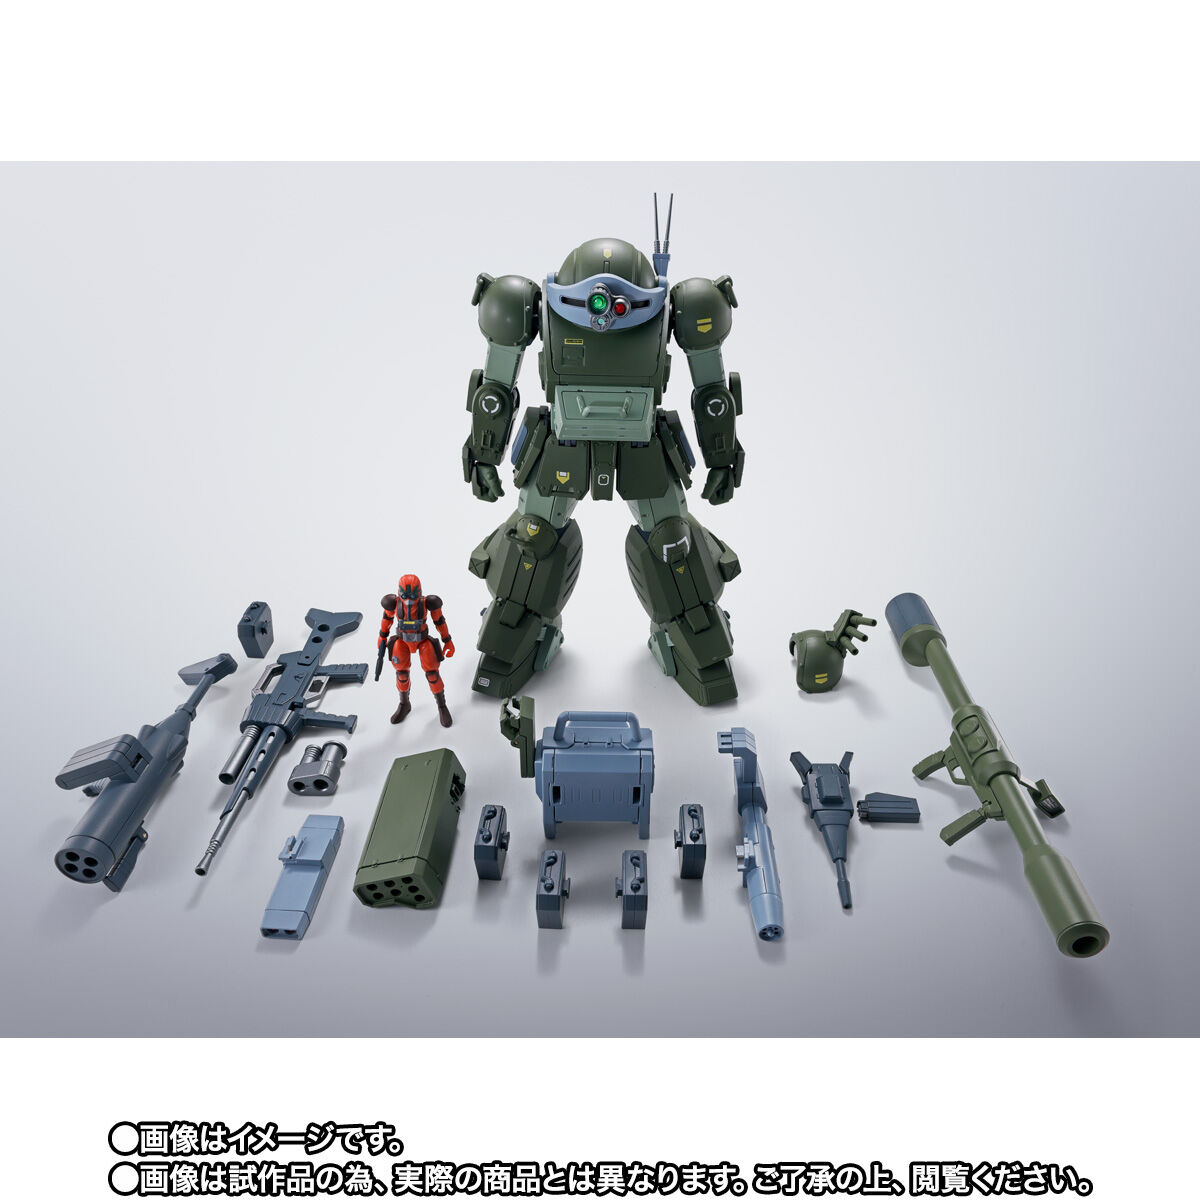 【限定販売】HI-METAL R『スコープドッグ ターボカスタム』装甲騎兵ボトムズ 可動フィギュア-010